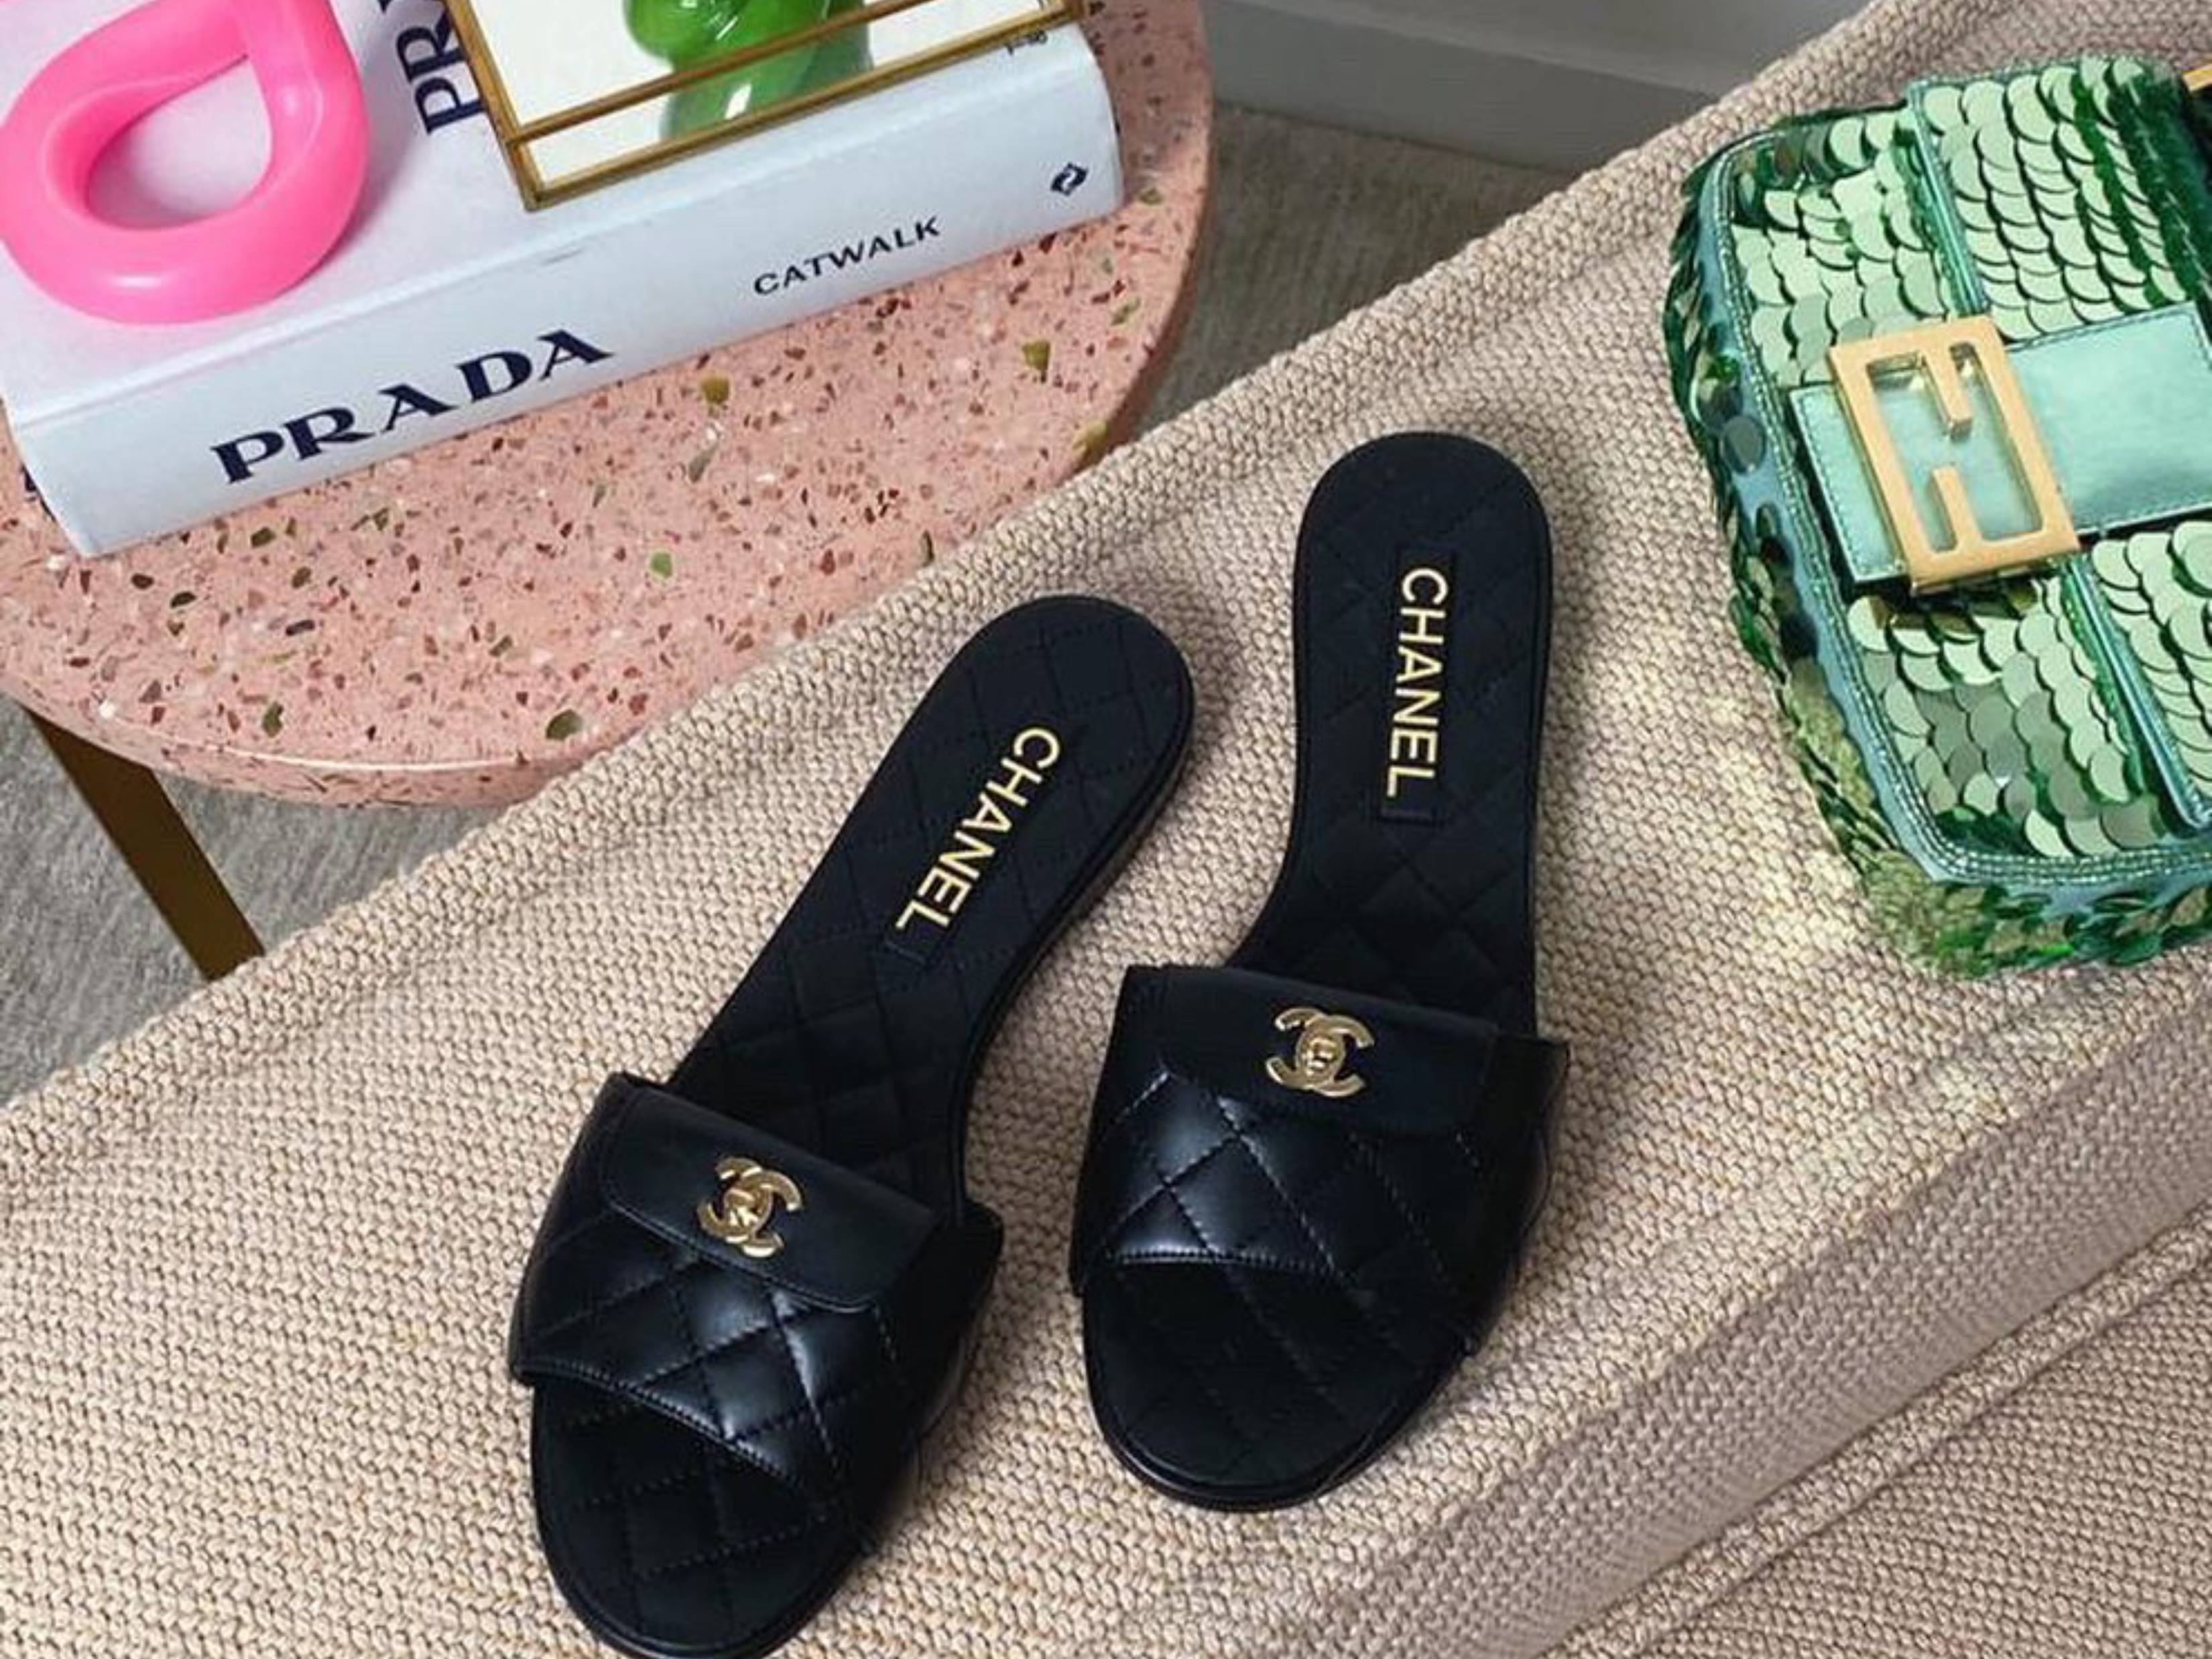 Capri Gladiator Studded Sandal: Women's Designer Sandals | Tory Burch